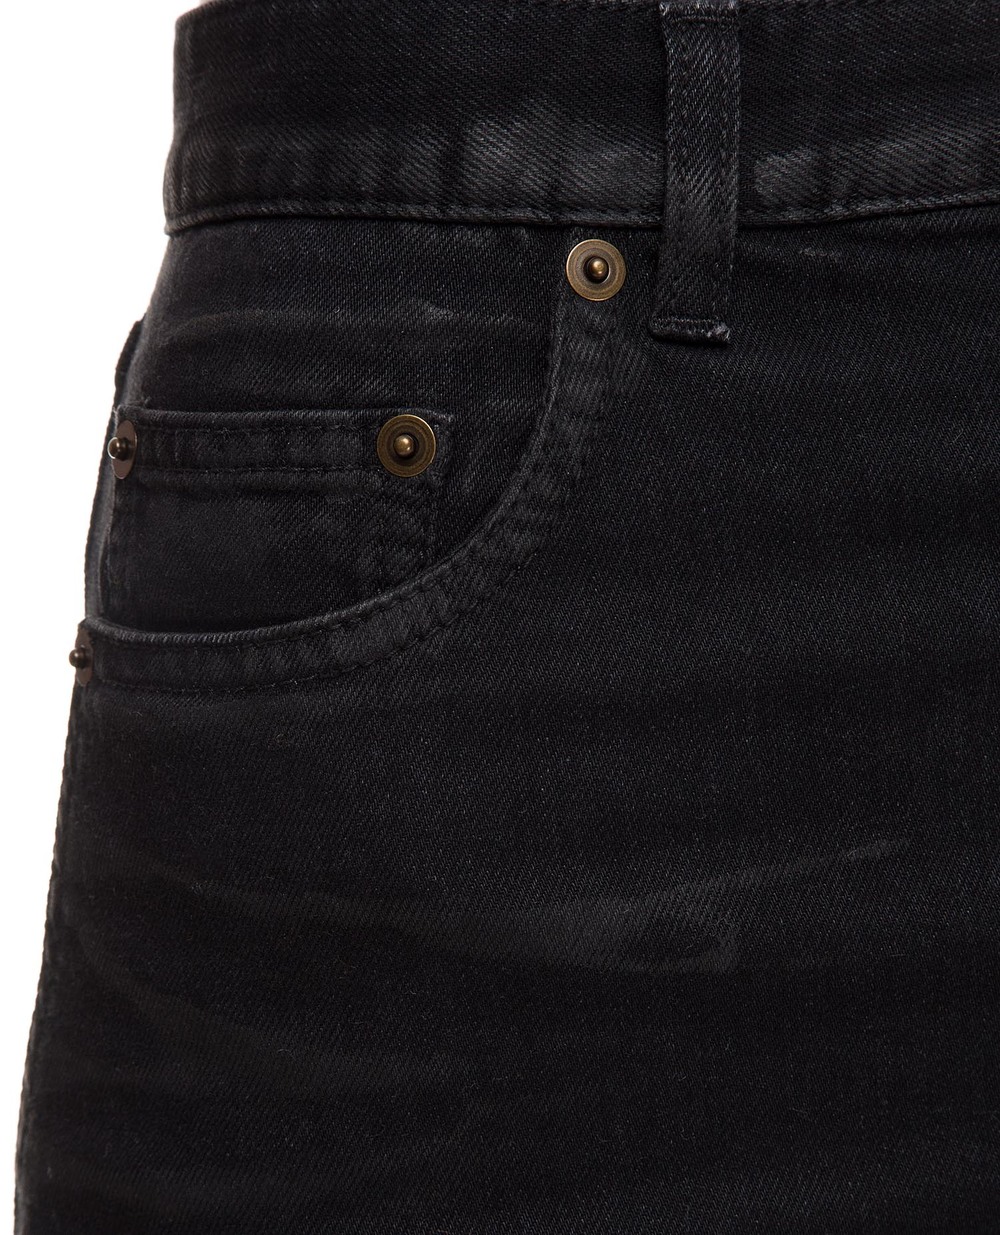 Джинсовая юбка Saint Laurent 596998-Y500A, черный цвет • Купить в интернет-магазине Kameron